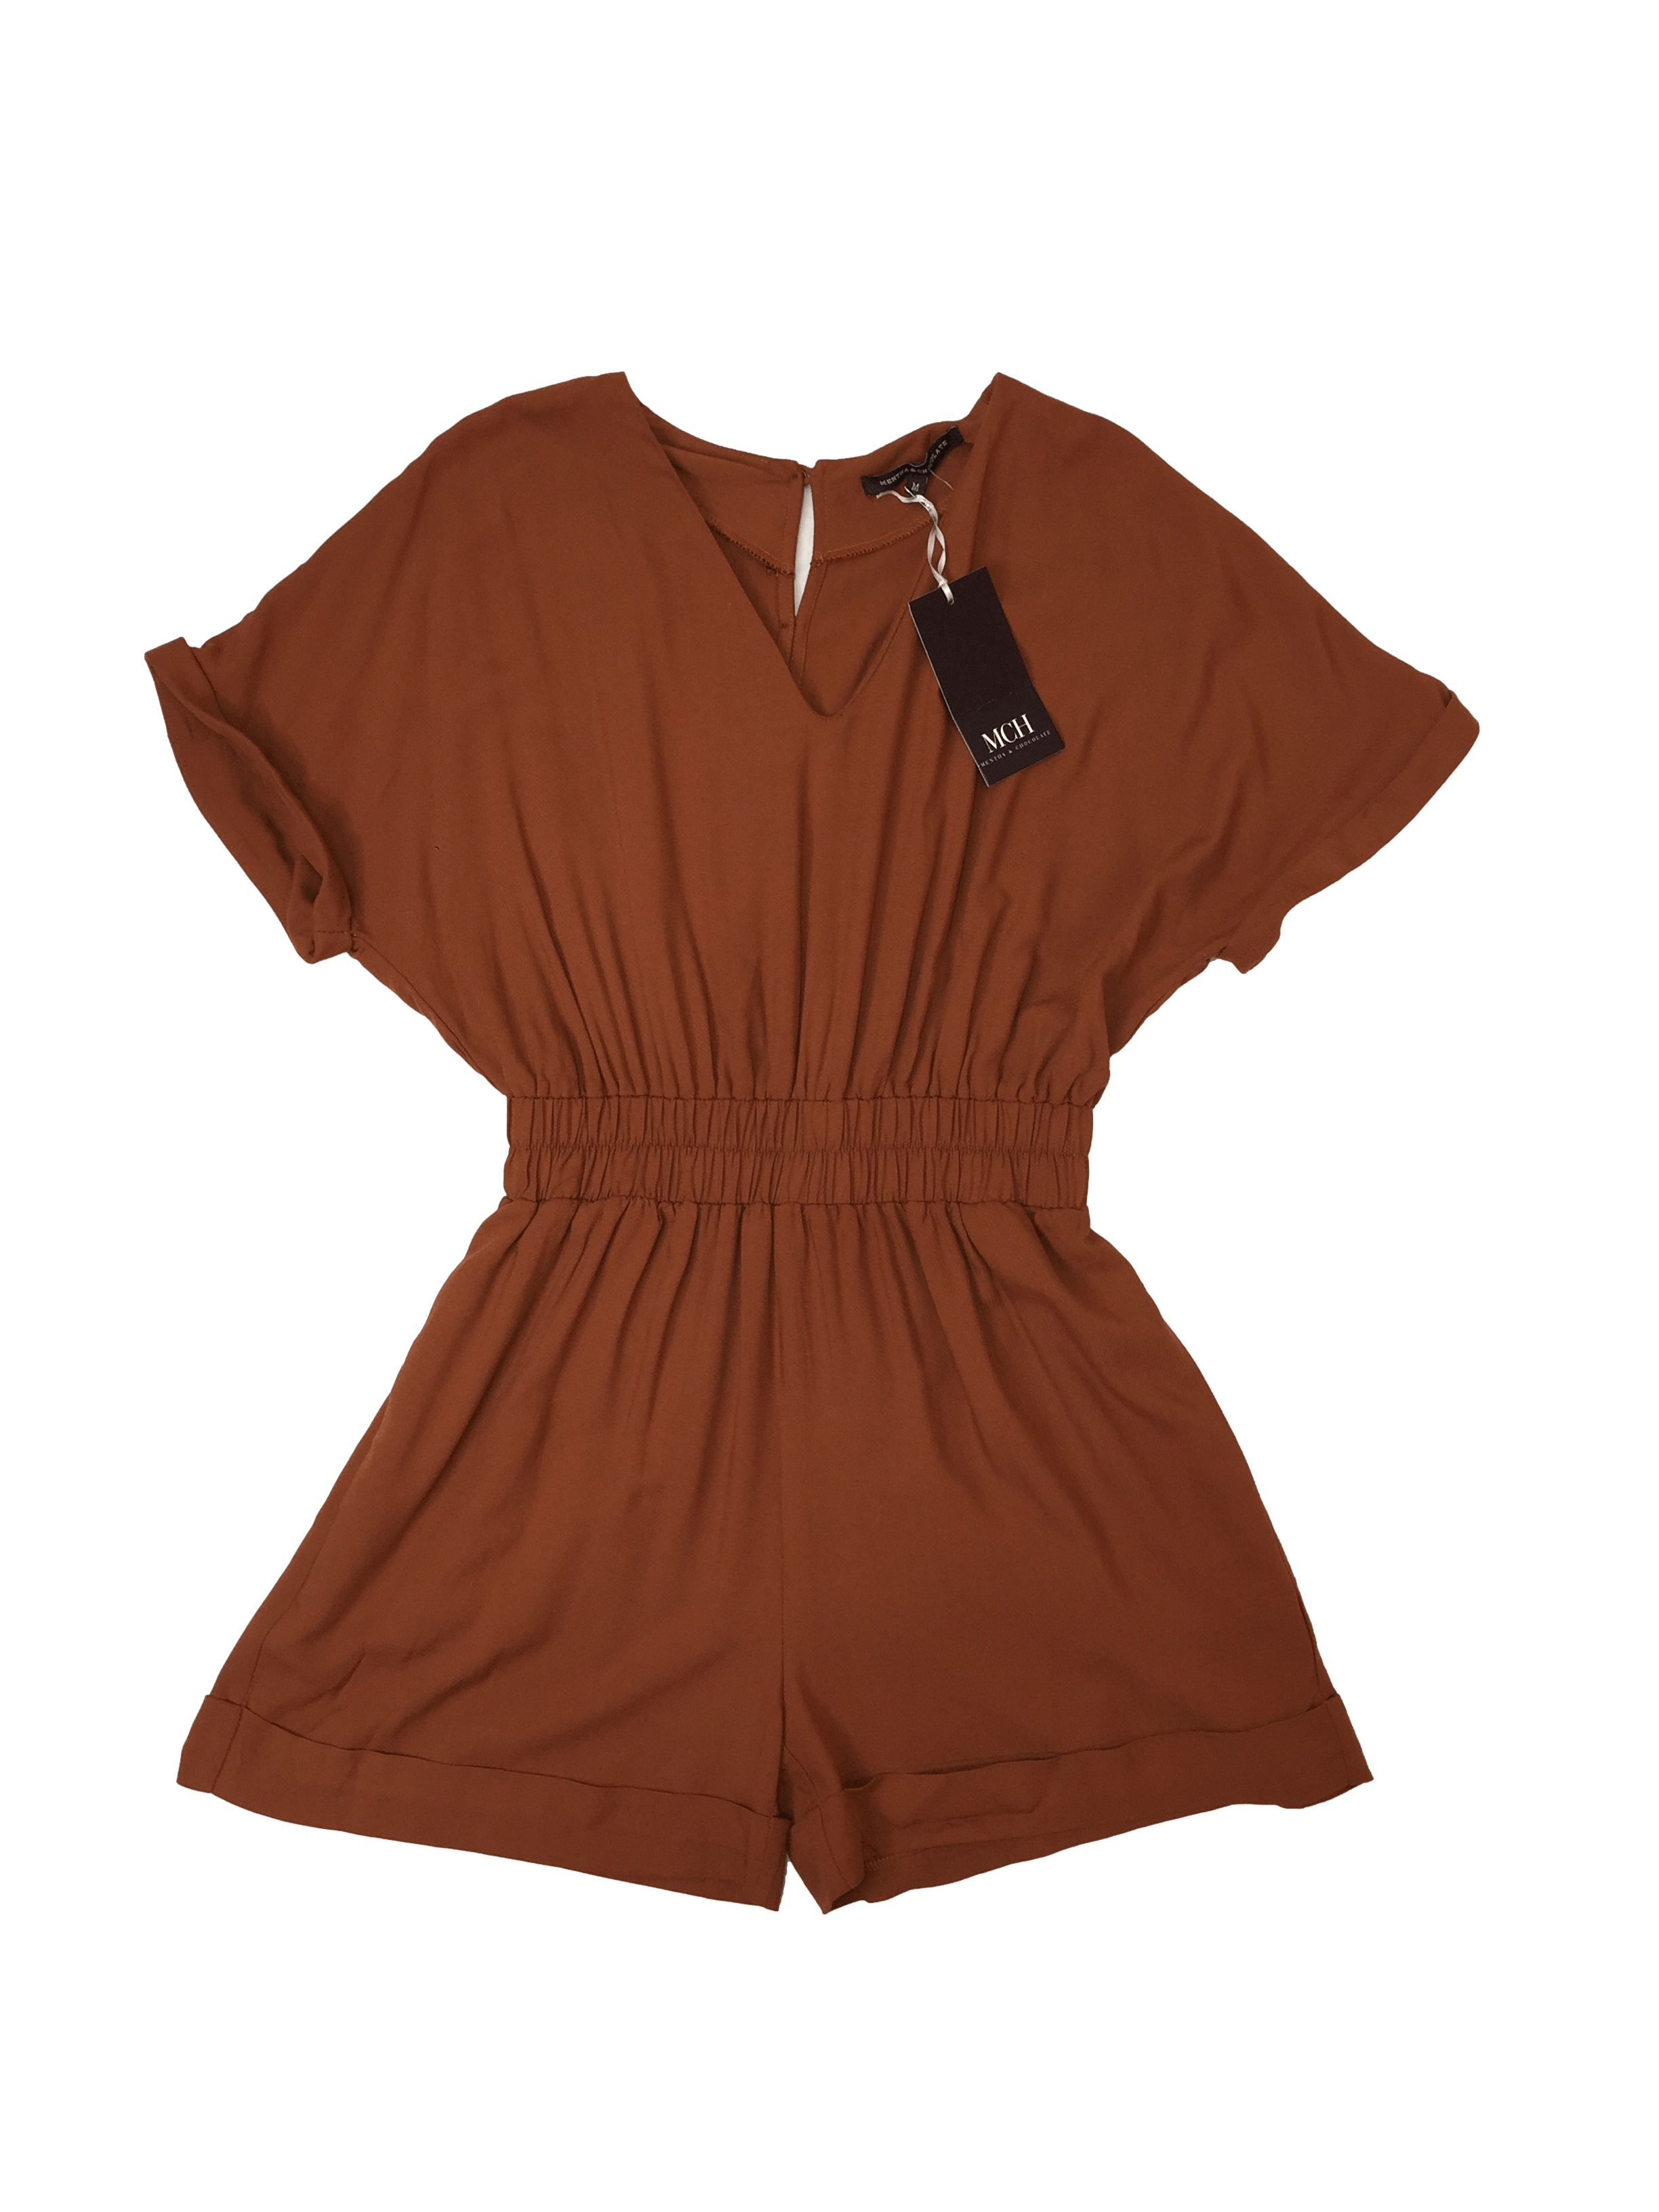 Romper Mentha & Chocolate camel, elástico en la cintura, botones posteriores y bolsillos. Busto: 106 cm, Largo: 86 cm. Nuevo con etiqueta